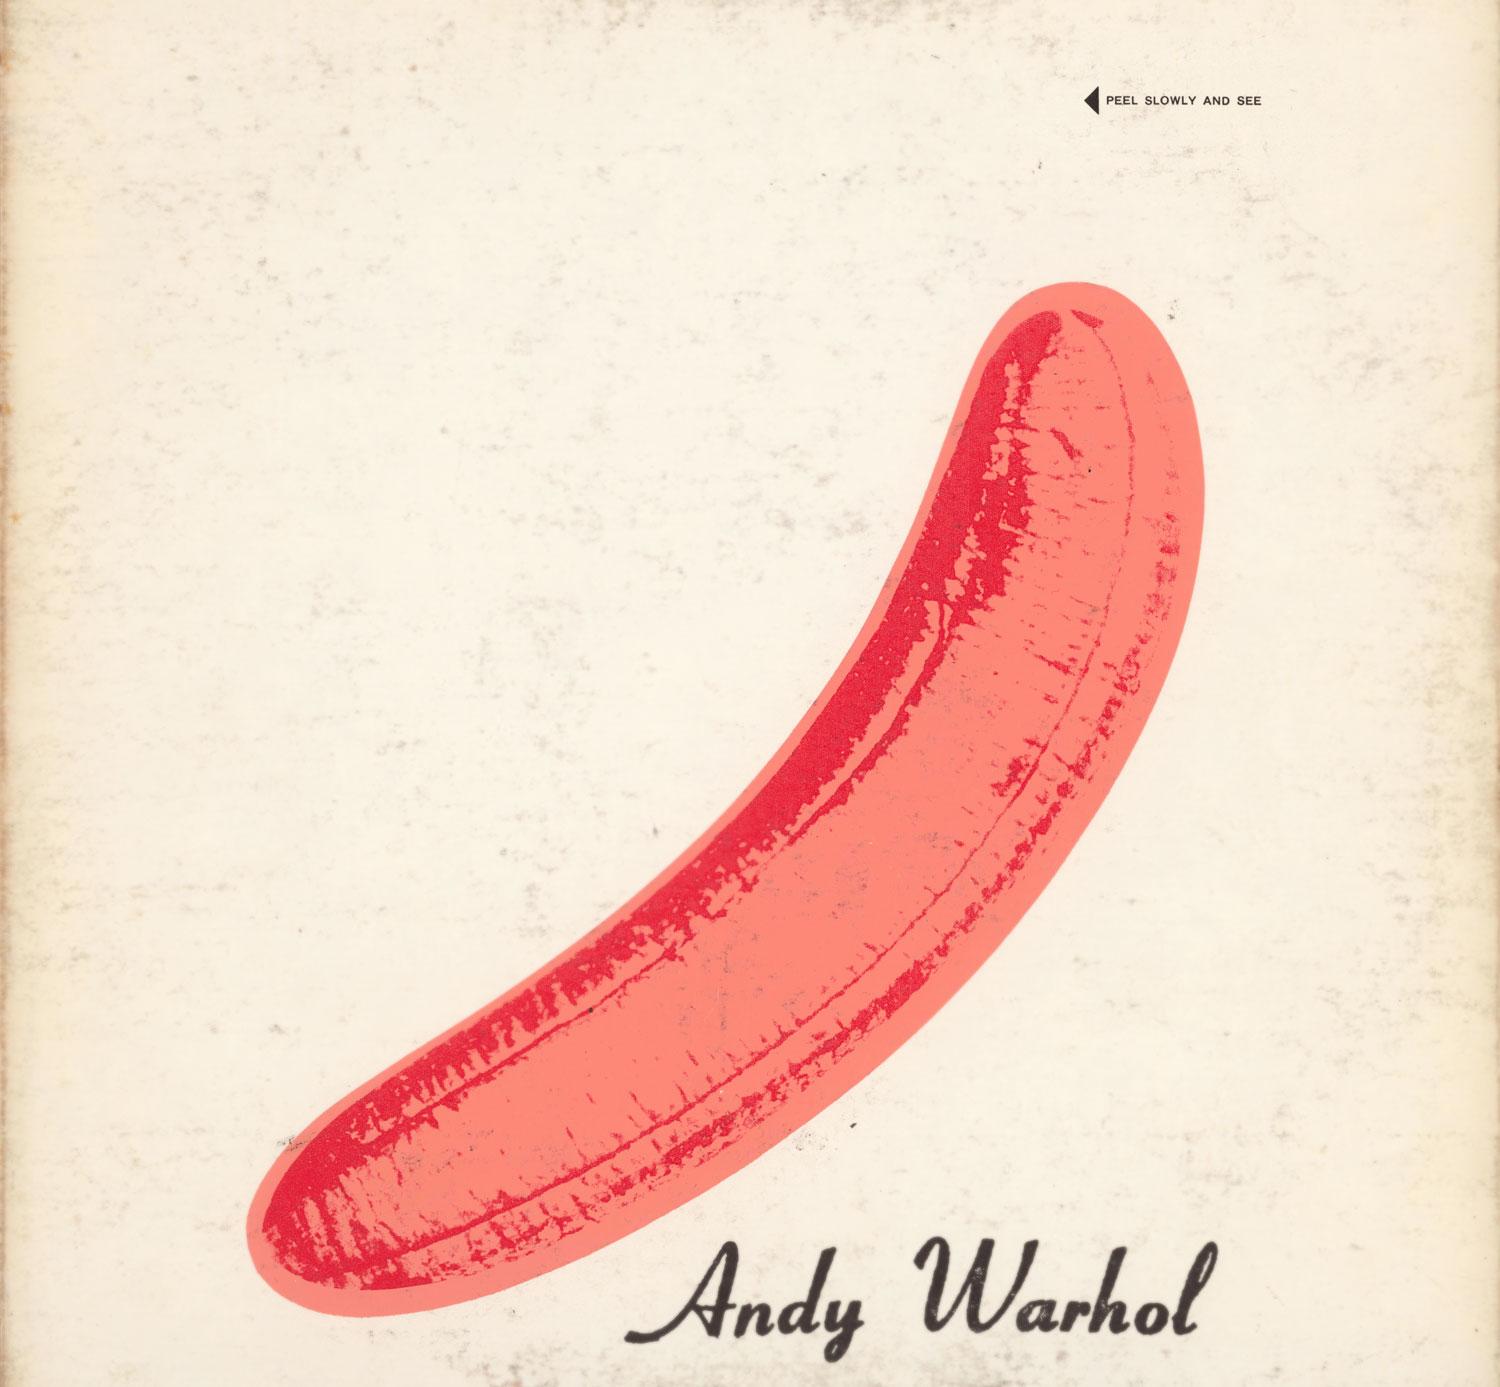 Andy Warhol Banana Cover Art 1967 :
The Velvet Underground & Nico : le très recherché pressage du début de l'année 1967 sur la côte Est, qui comporte uniquement une banane pelée (couverture uniquement). Il s'agit d'une œuvre d'art murale